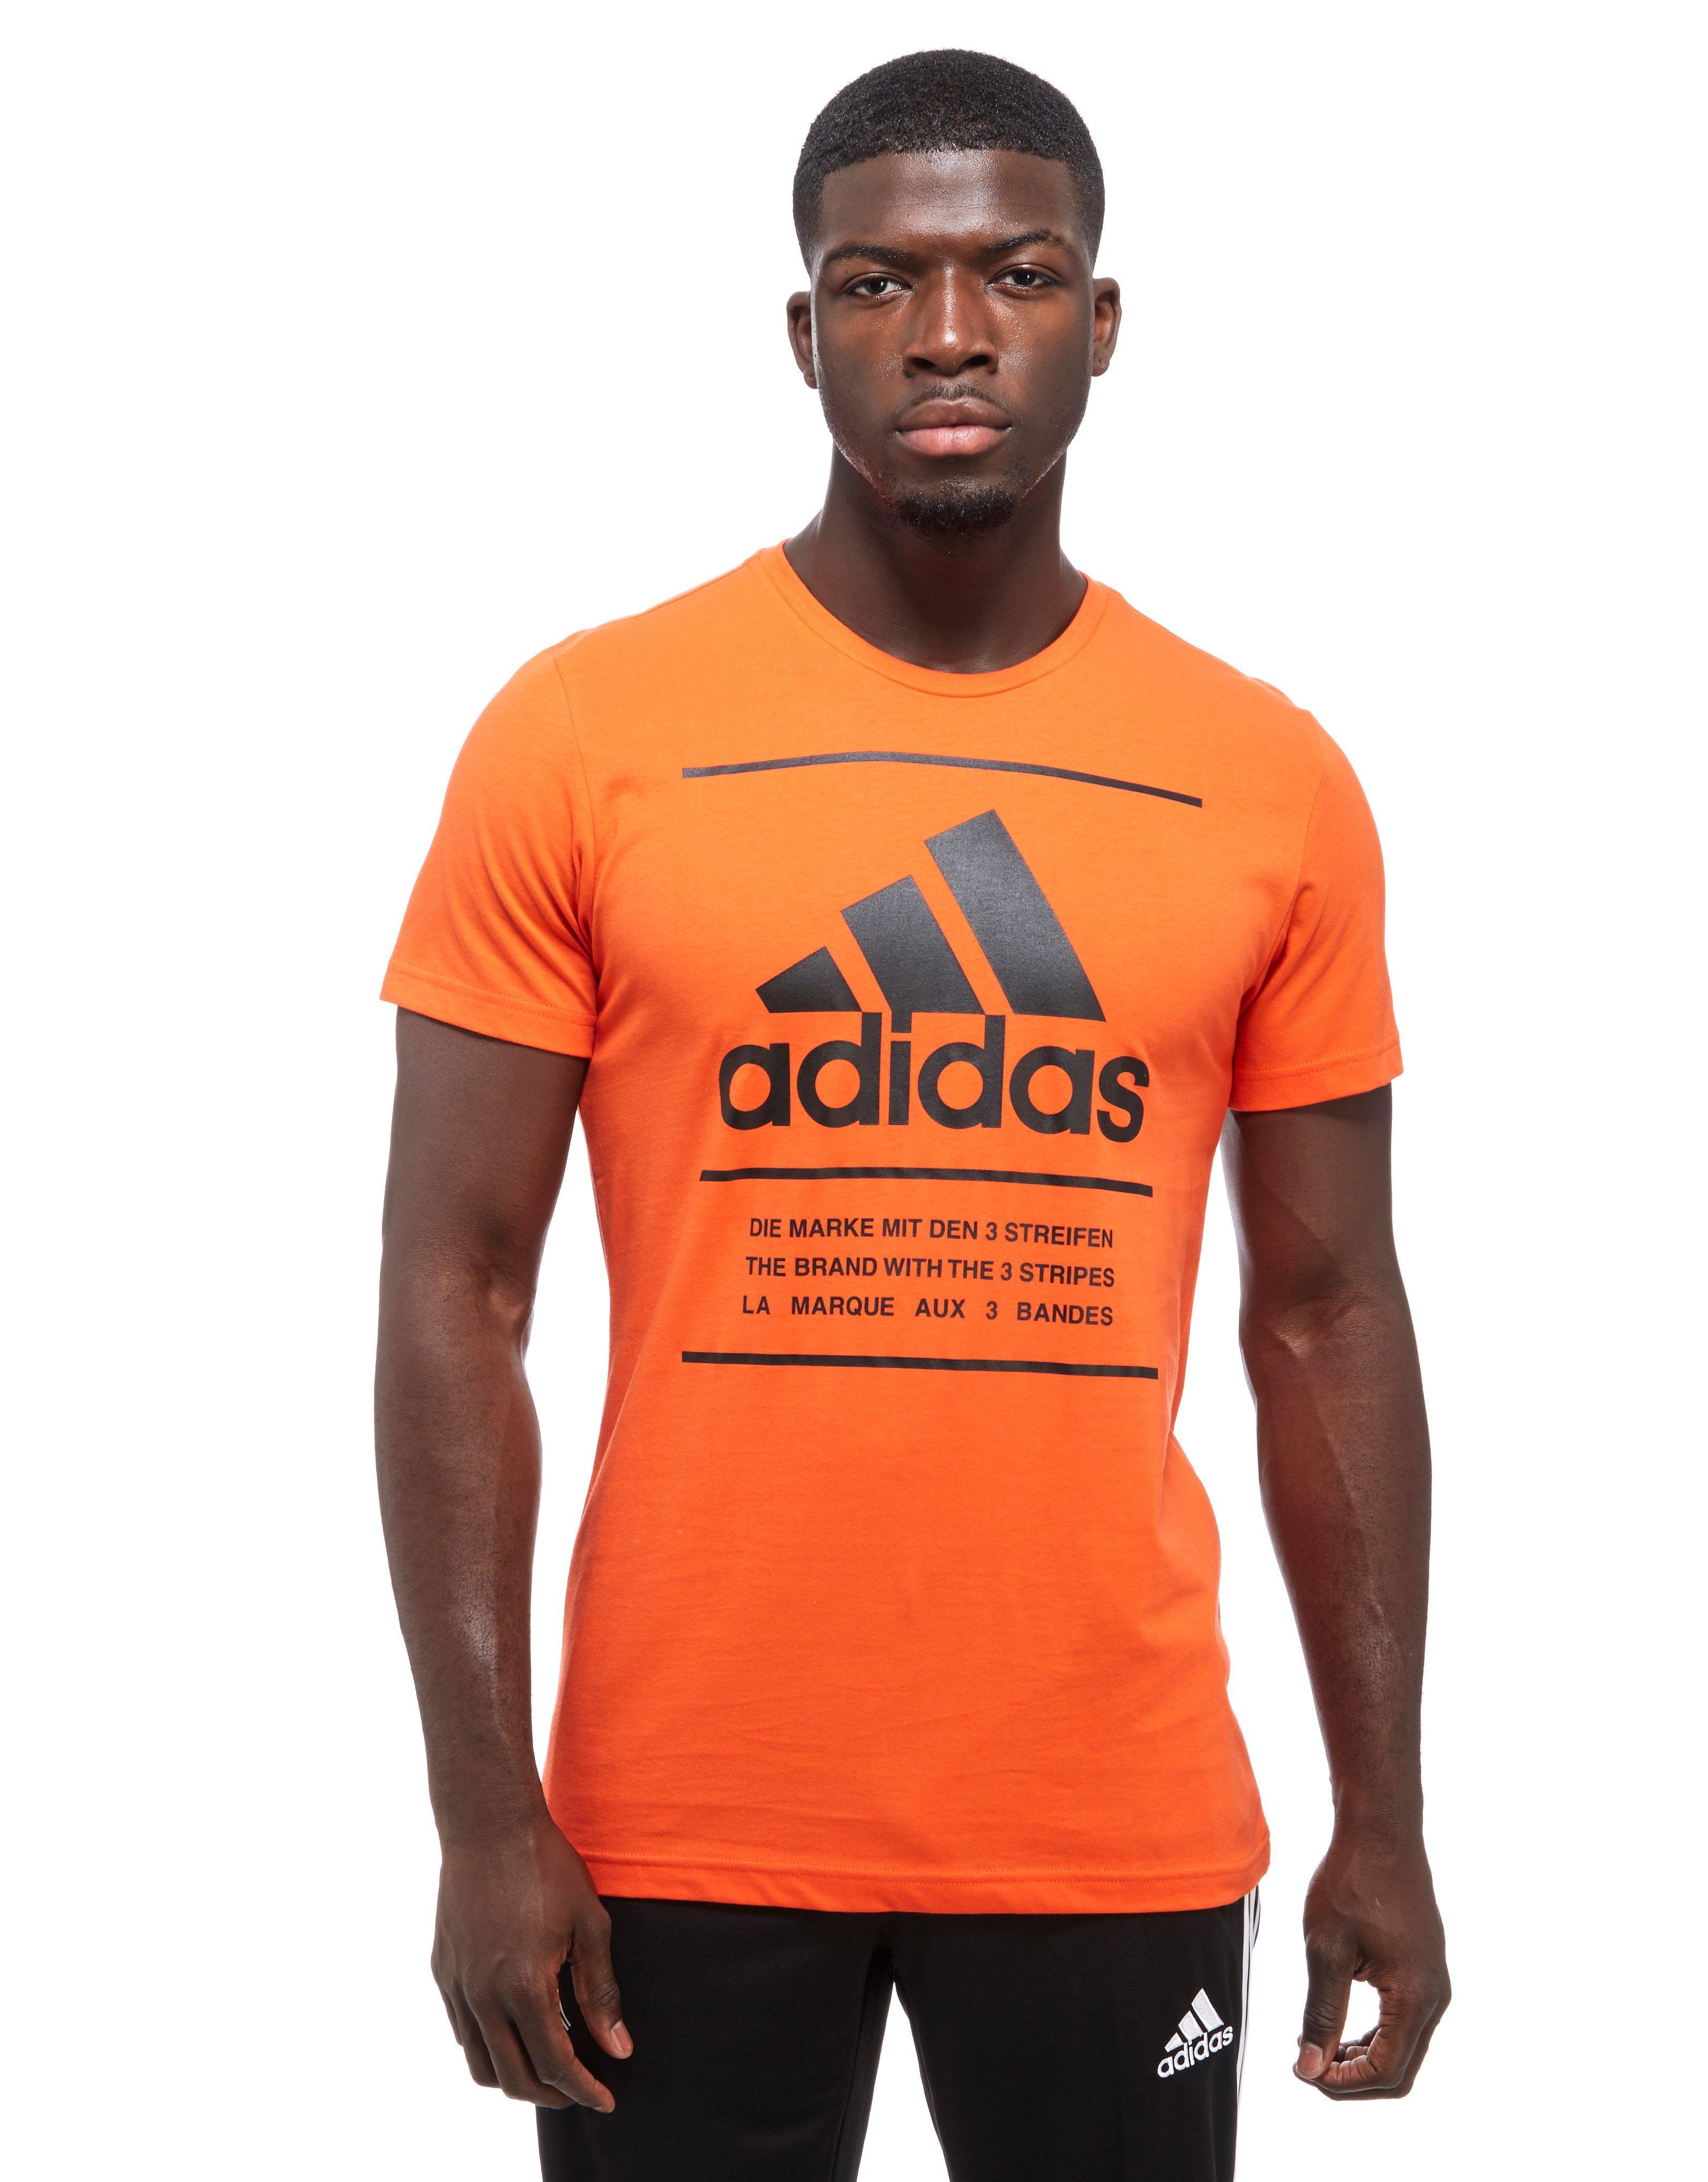 black and orange adidas shirt Off 53% - canerofset.com